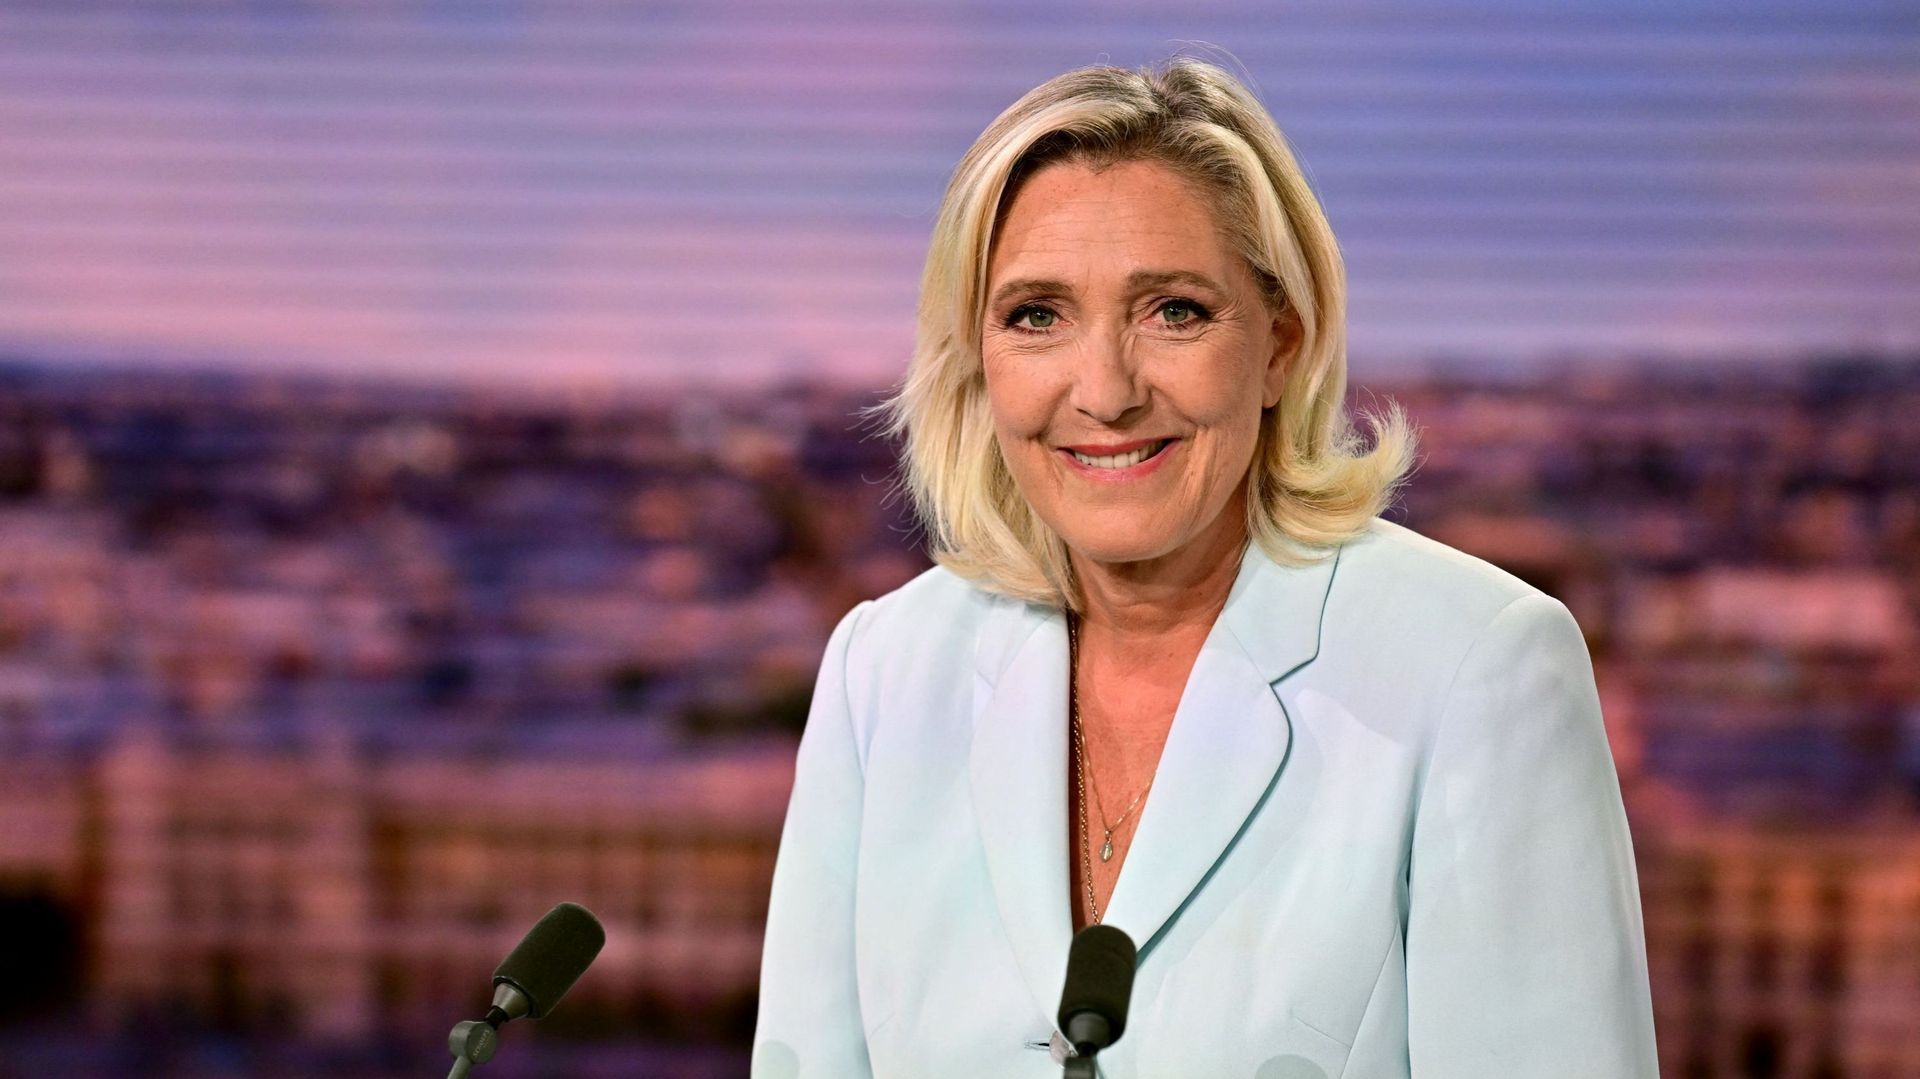 La dirigeante du parti d’extrême droite français Rassemblement national (RN) et membre du Parlement français, Marine Le Pen, pose avant son interview pendant le journal télévisé du soir de la chaîne française TF1, dans les studios de TF1 à Boulogne-Billan